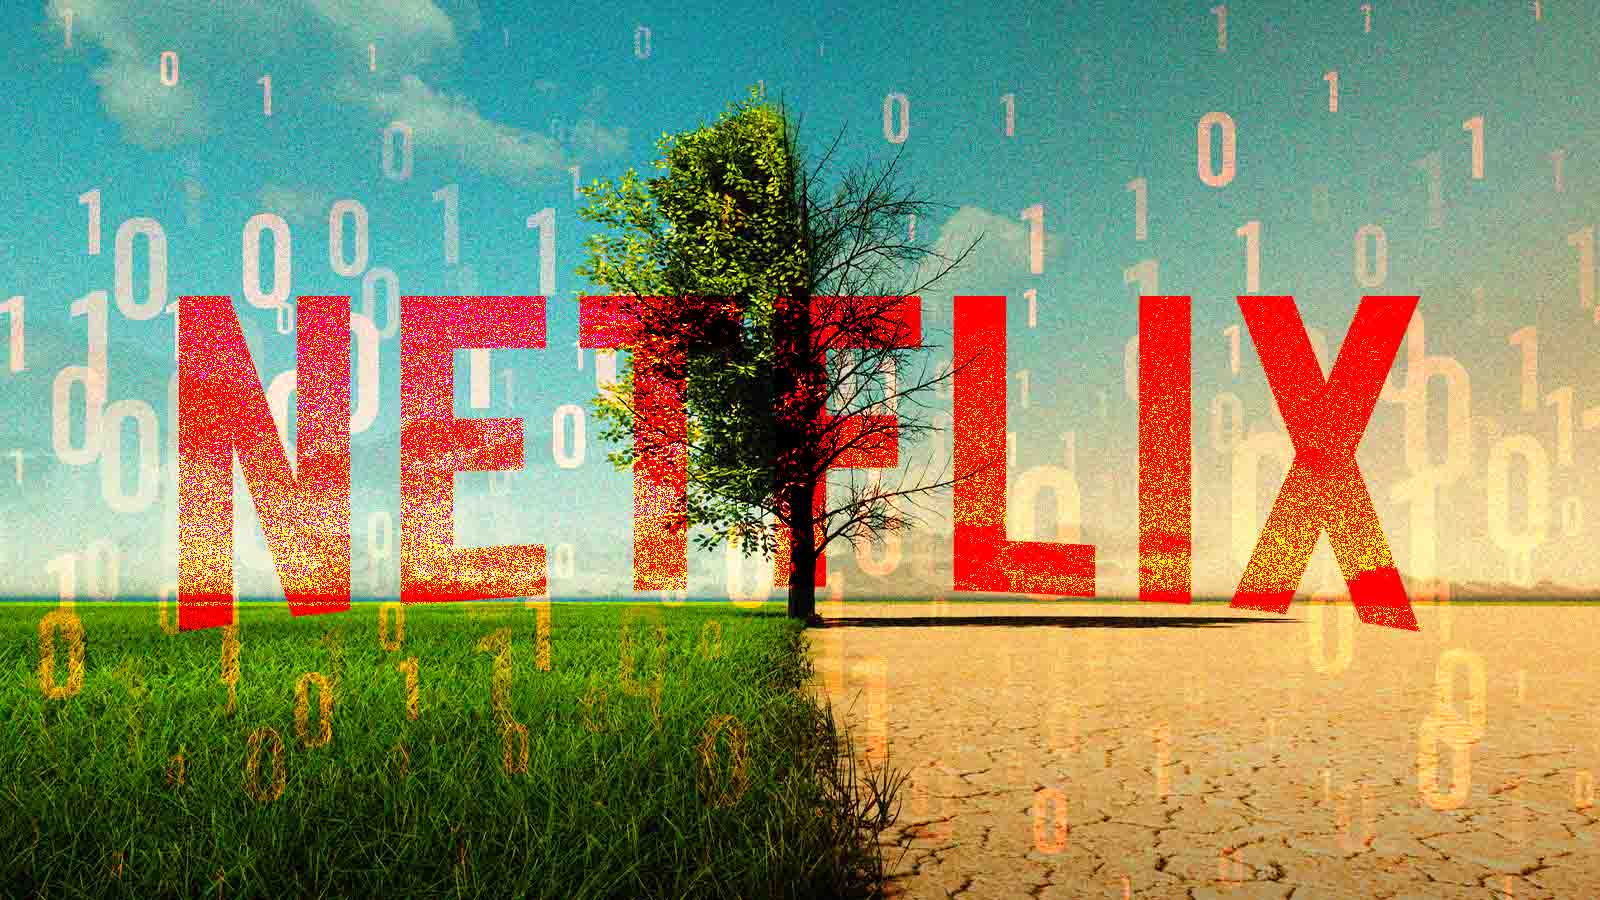 Seriam os algoritmos responsáveis pela crise da Netflix? - Forbes